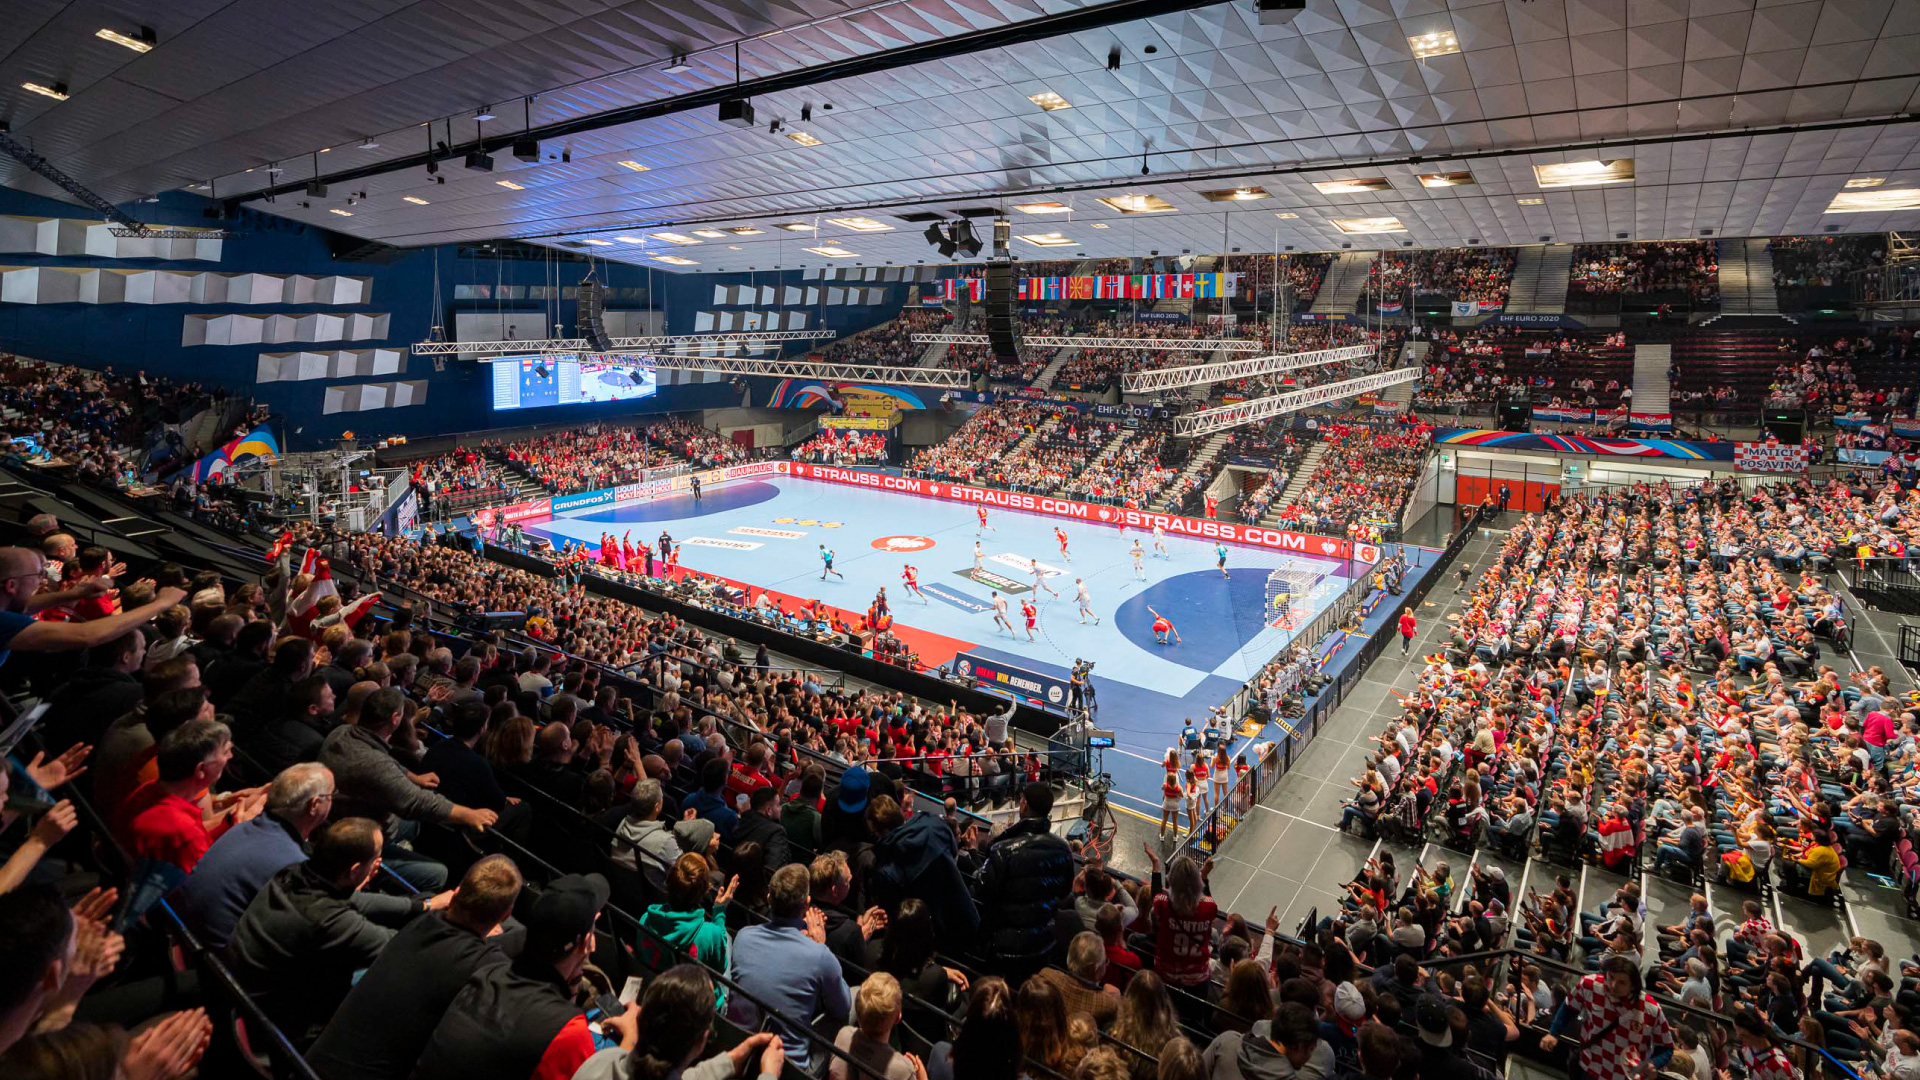 Championnat d'Europe de Handball Vienne 2020 - PRG a fourni l'éclairage, le son et la vidéo pour cet événement.